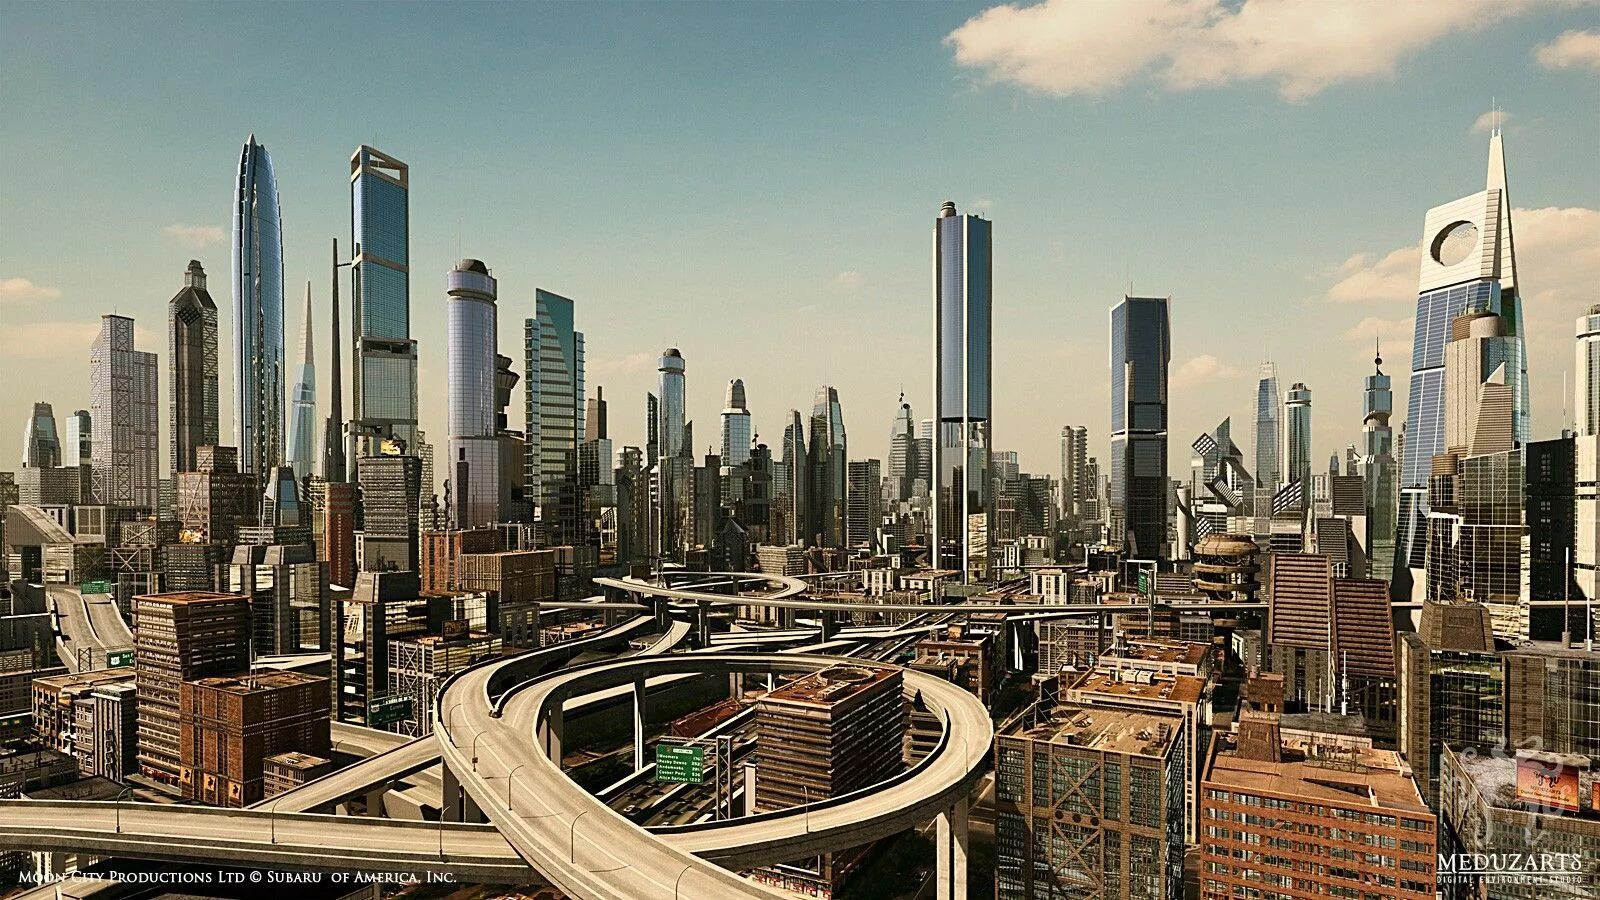 Будущего и т д эти. Бангалор небоскребы. Небоскребы Sky-Terra в Сан-Франциско. Город будущего 2060 год. Cities Skylines город будущего.